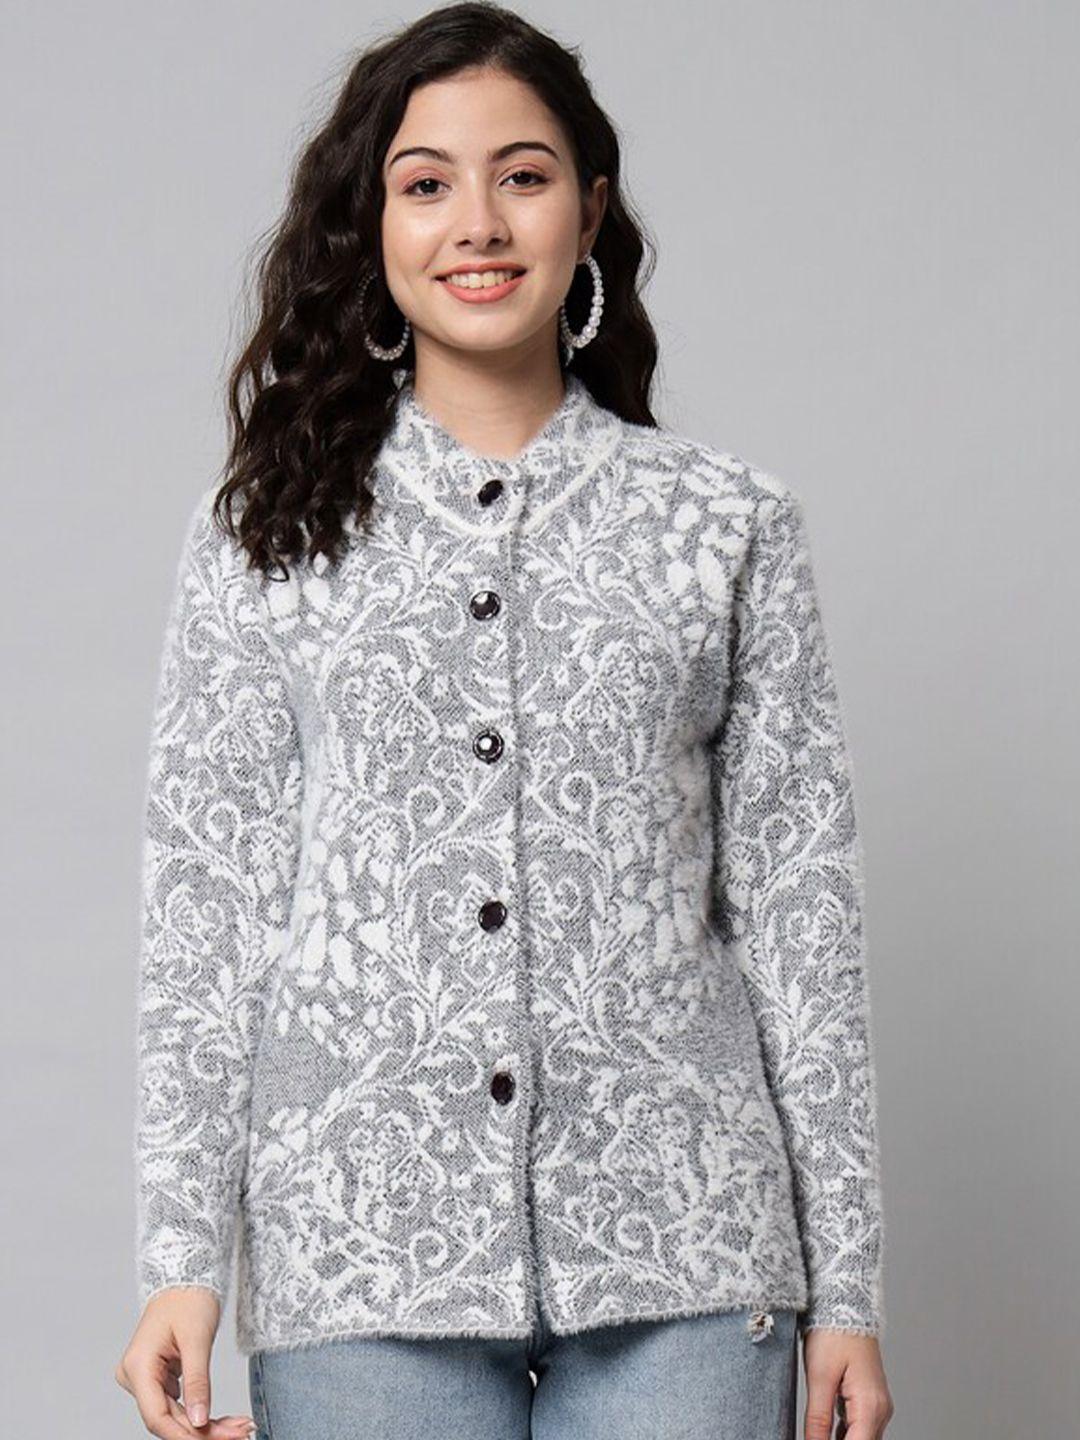 ewools-mock-collar-floral-printed-long-sleeve-woollen-cardigan-sweaters